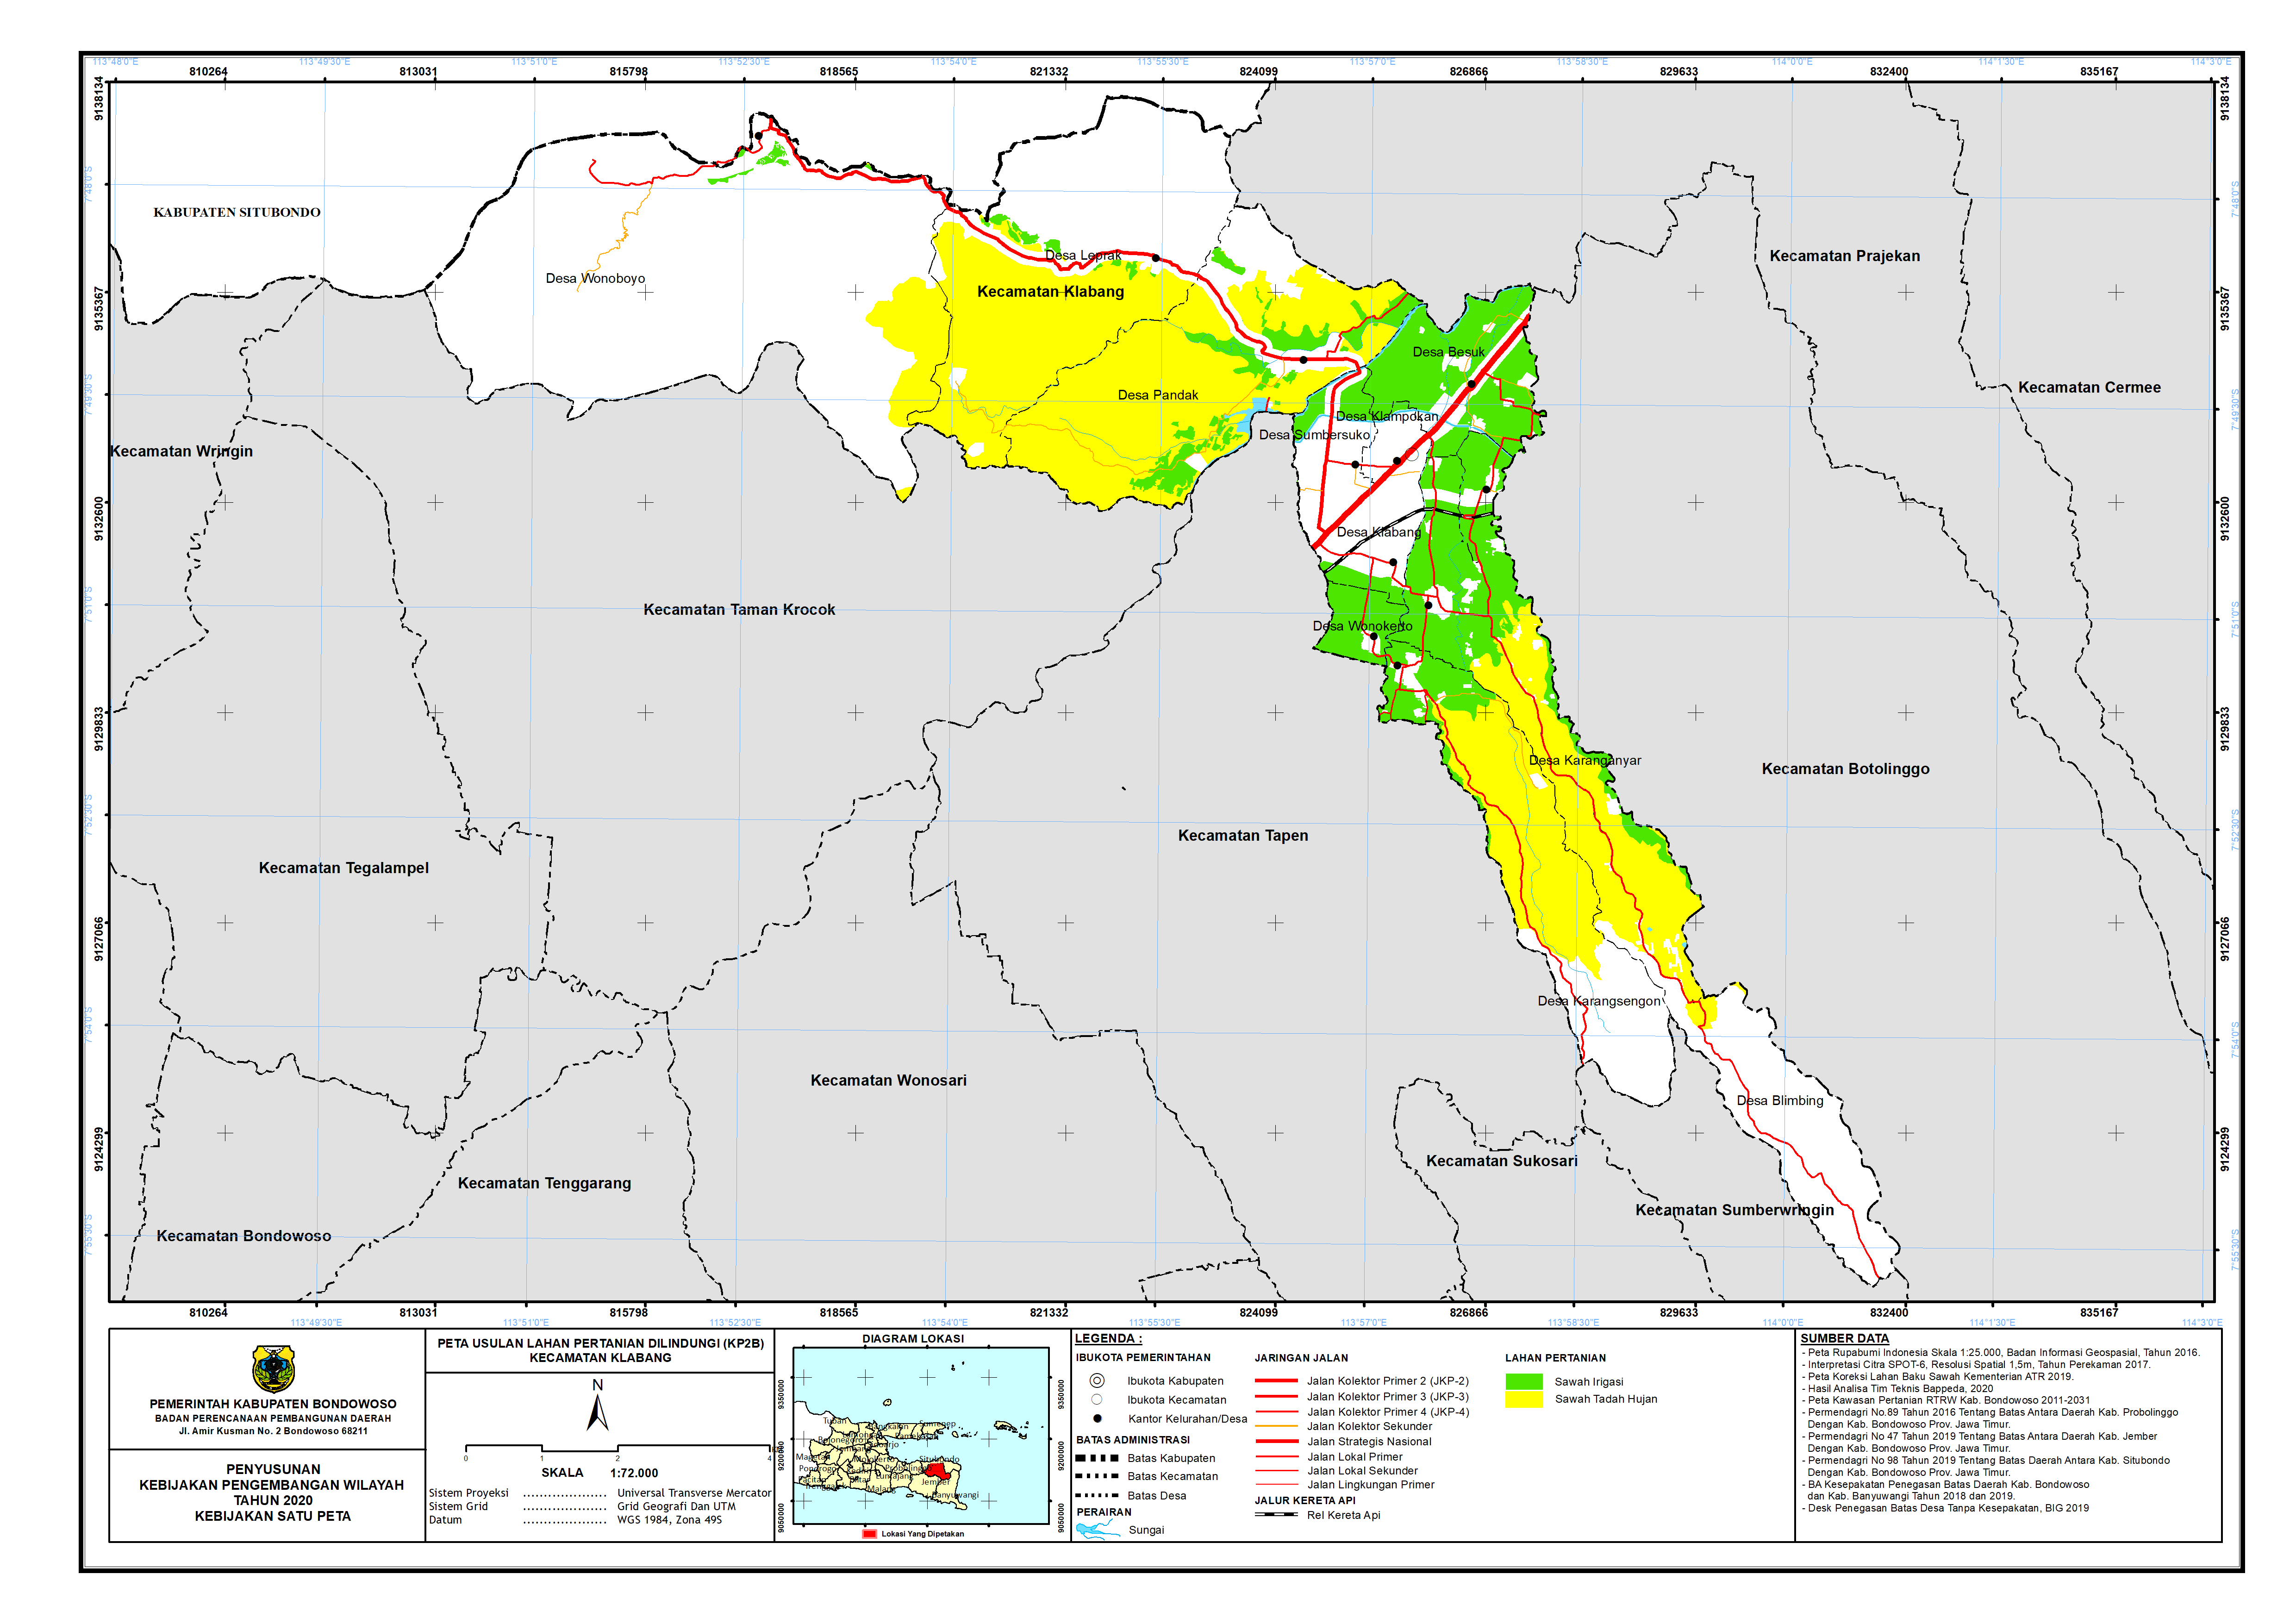 Peta Usulan Lahan Pertanian  Dilindungi Kecamatan Klabang.png